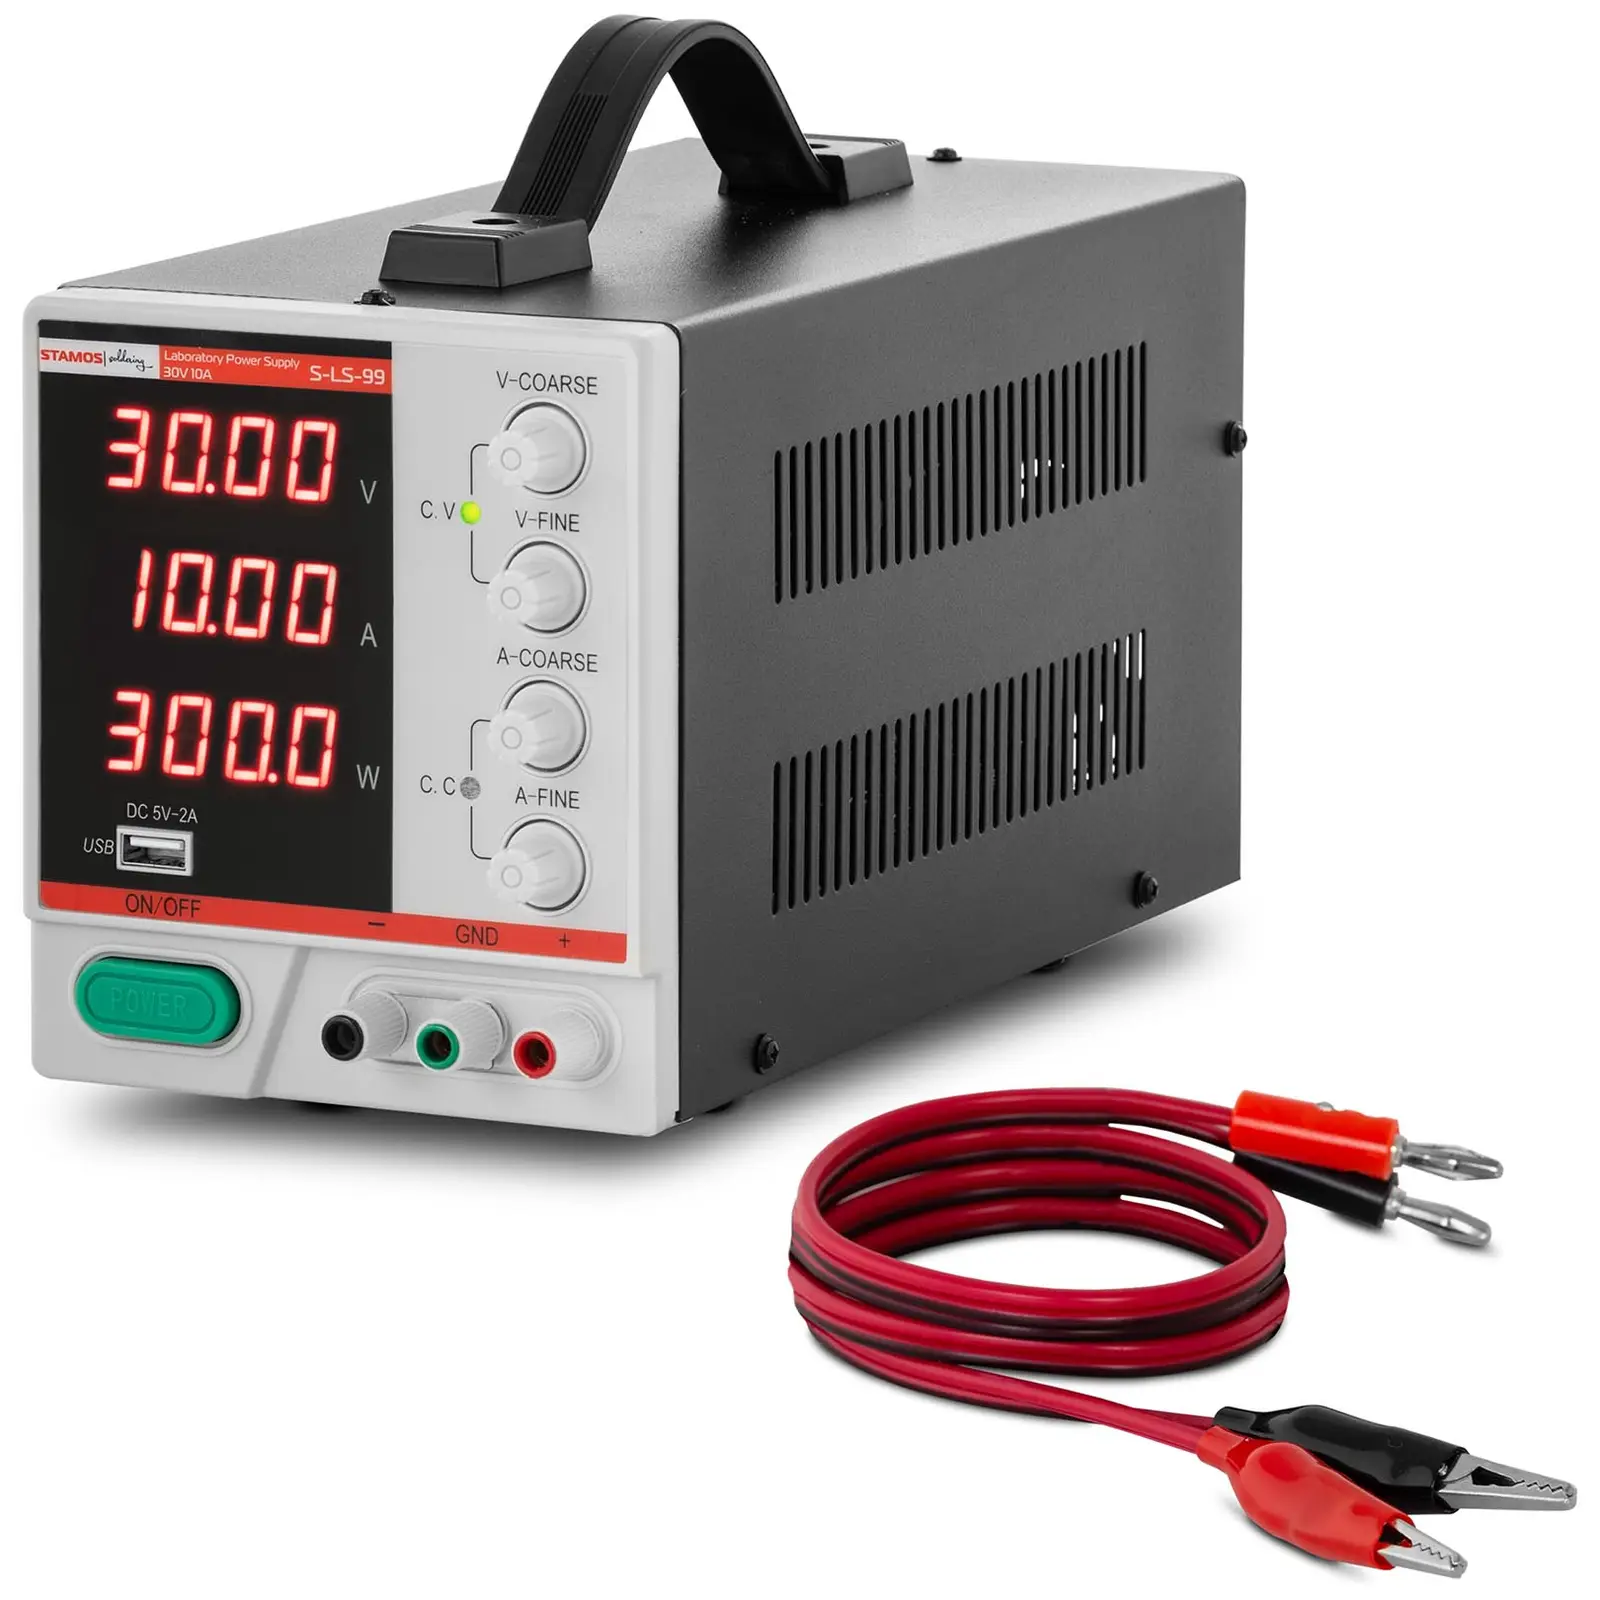 stamos soldering alimentation de laboratoire - 0 - 30 v - 0 - 10 a cc - 300 w - Écran led à 4 chiffres - usb